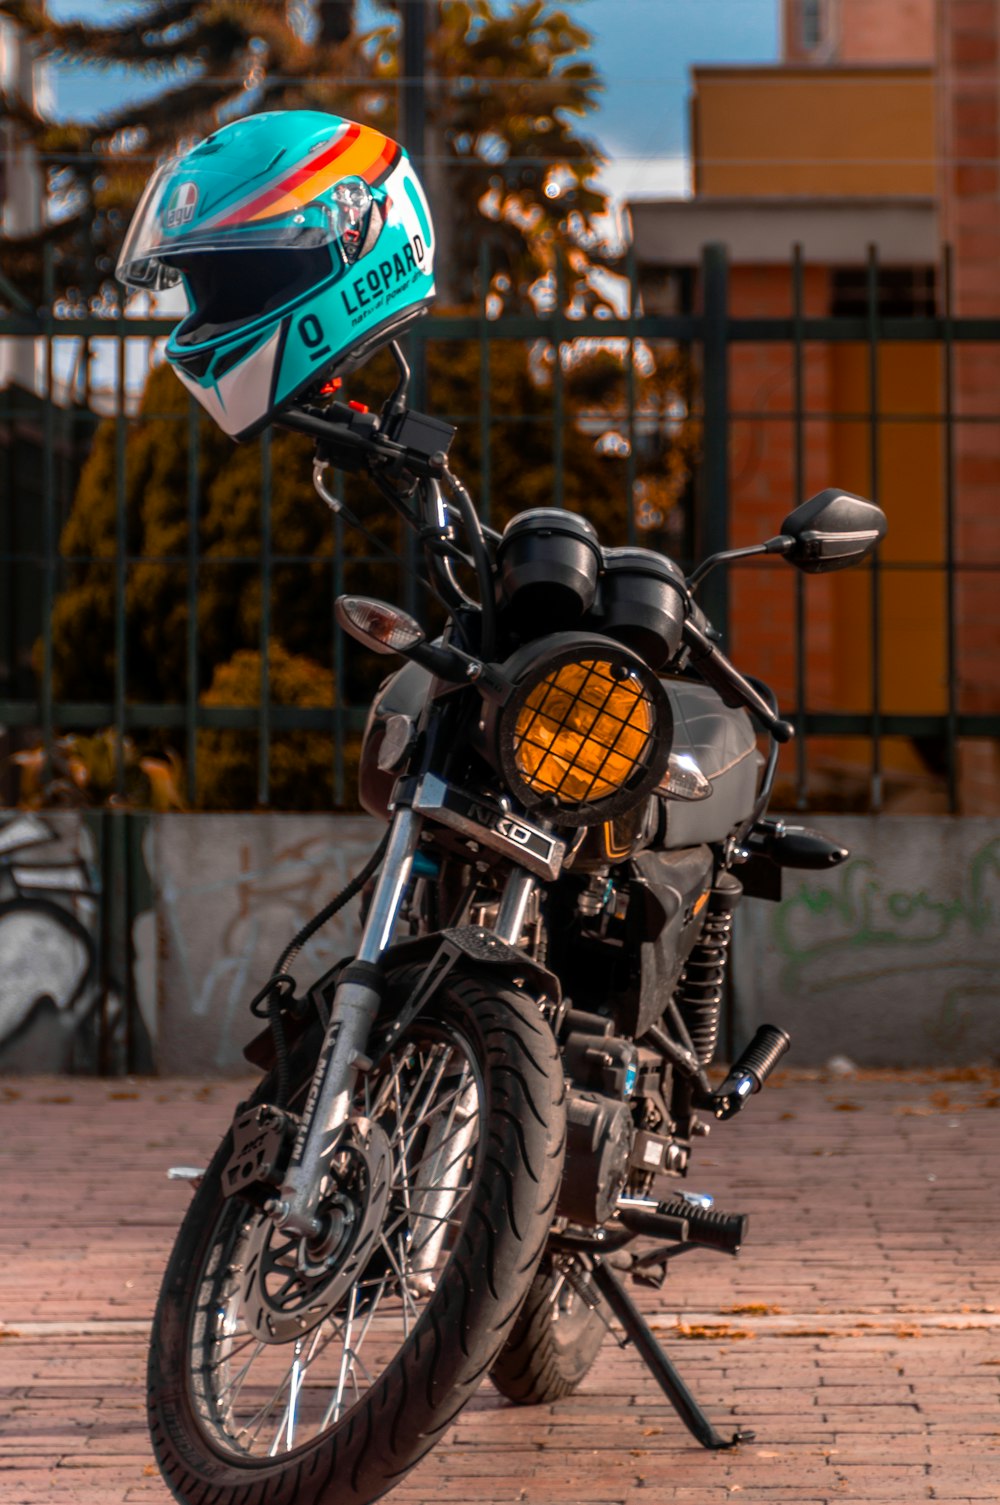 motocicleta preta com tampa azul e verde